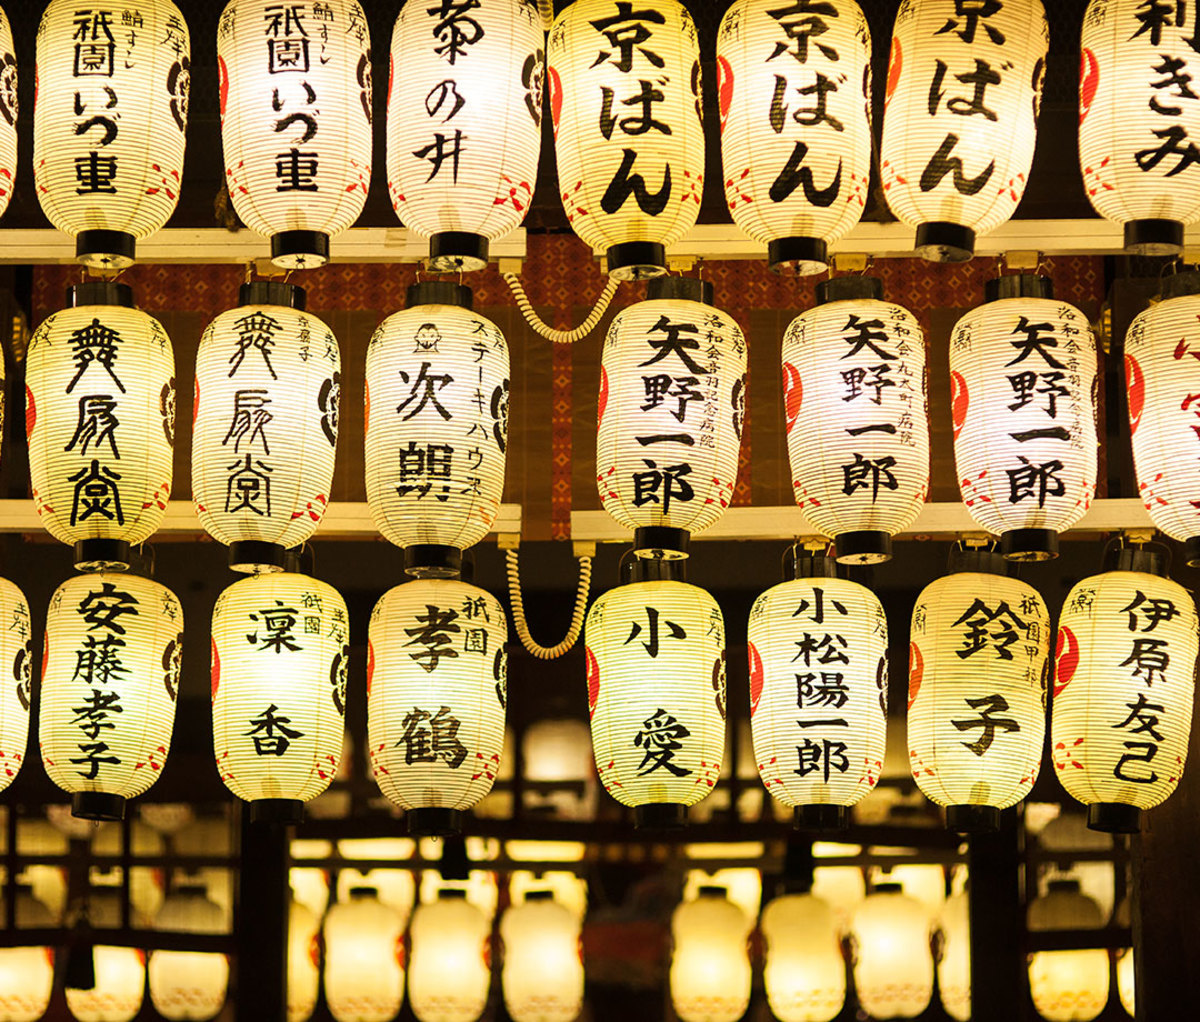 Japanese lanterns for praying, in Kyoto.